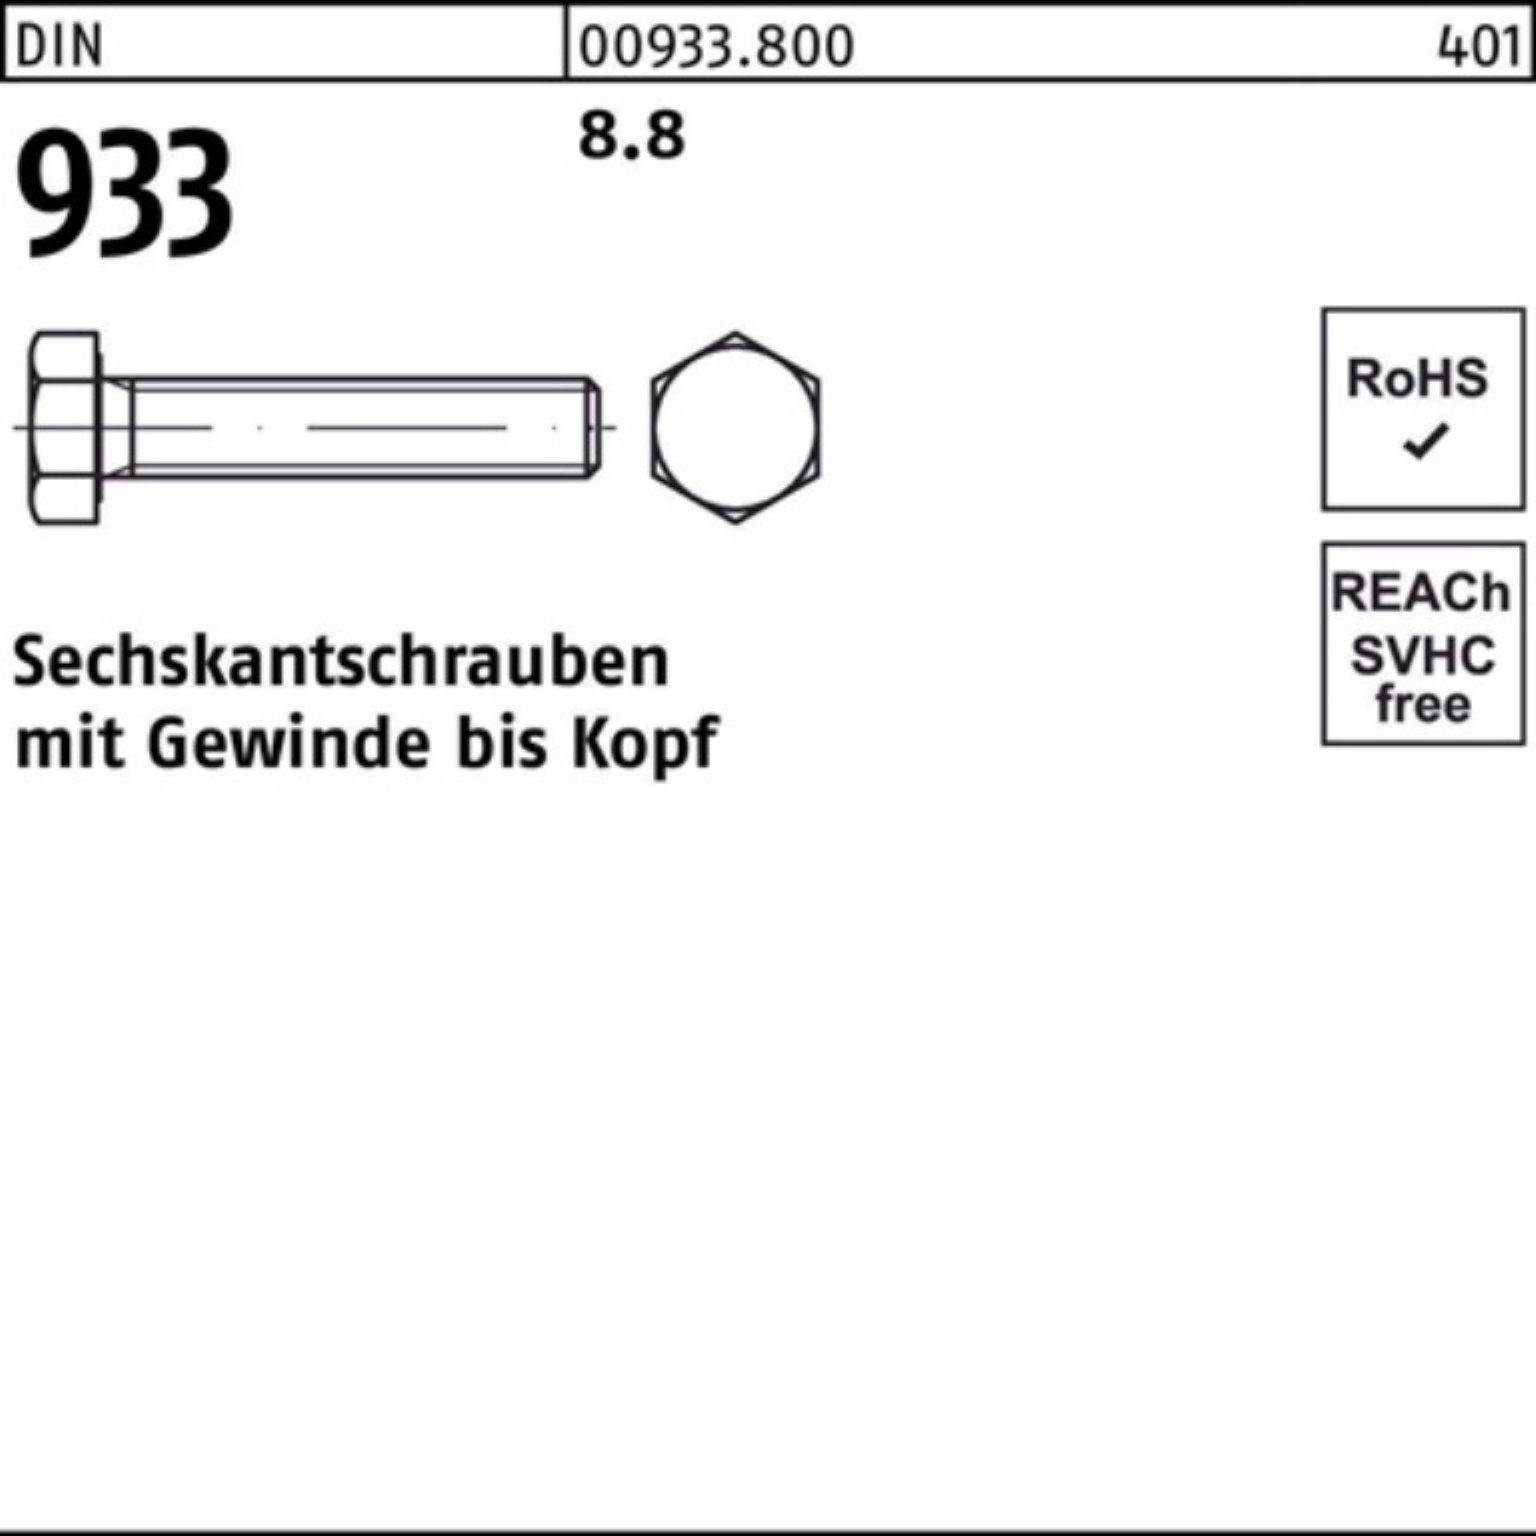 Sechskantschraube Stück VG 8.8 DIN 933 933 100er Pack Reyher M24x DIN 1 160 Sechskantschraube